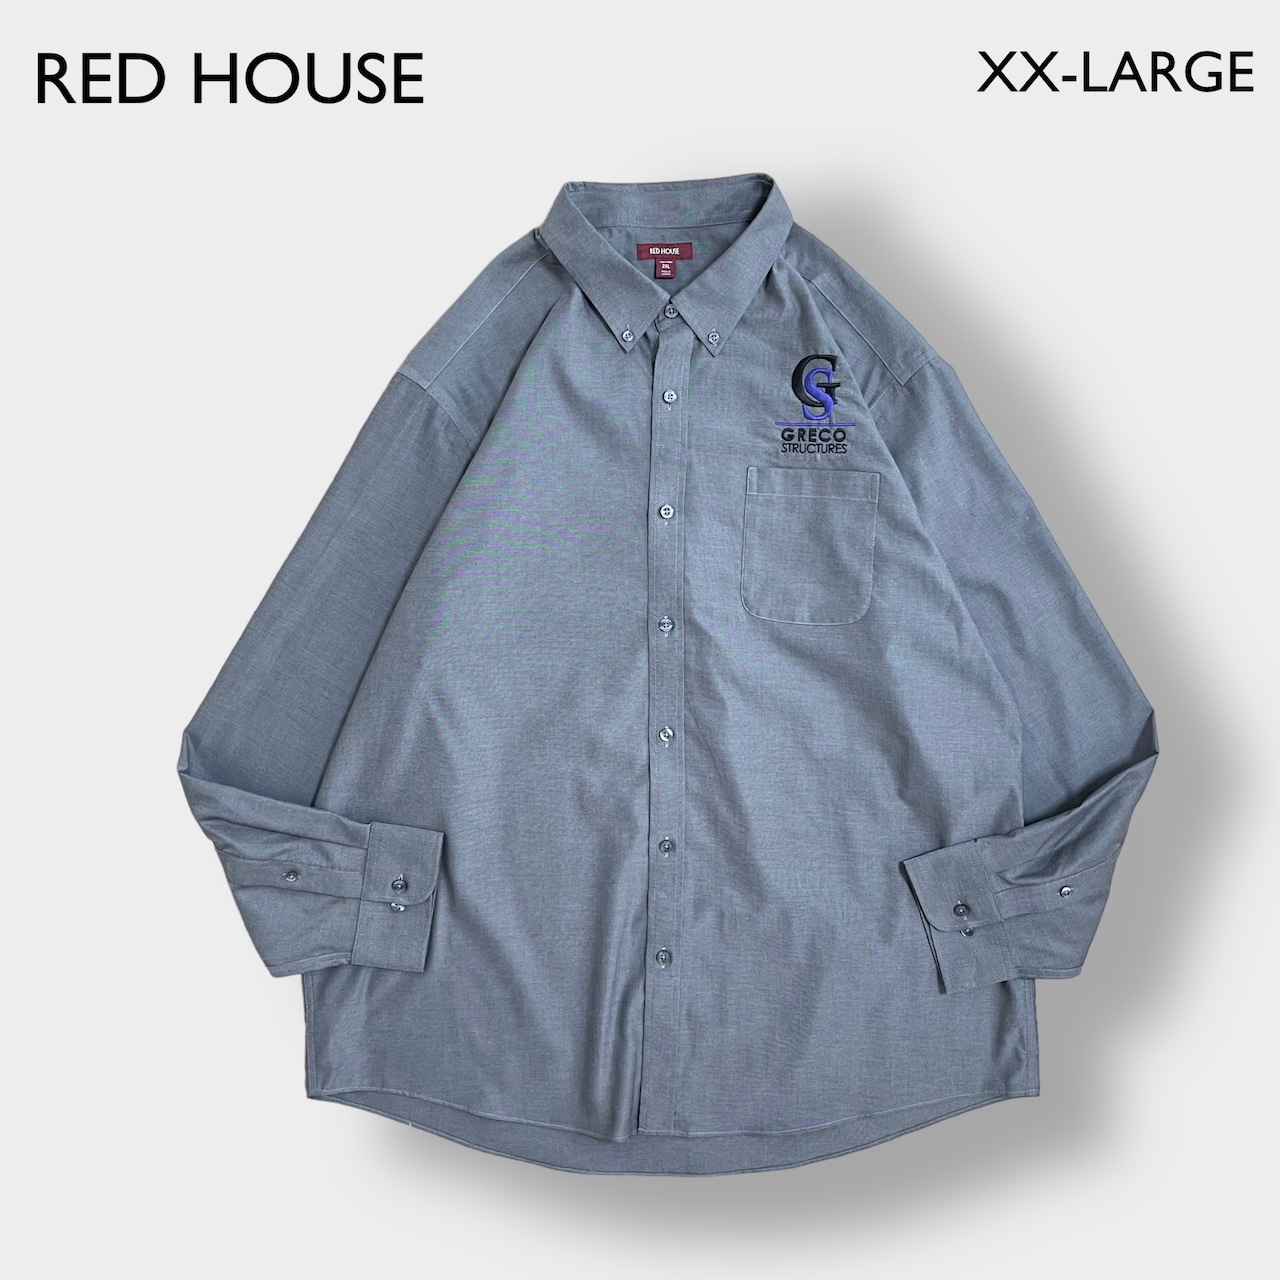 【RED HOUSE】ワークシャツ ノンアイロン 企業系 企業 刺繍 ロゴ ワンポイント ボタンダウン XL ビッグシルエット Greco Structures レッドハウス us古着